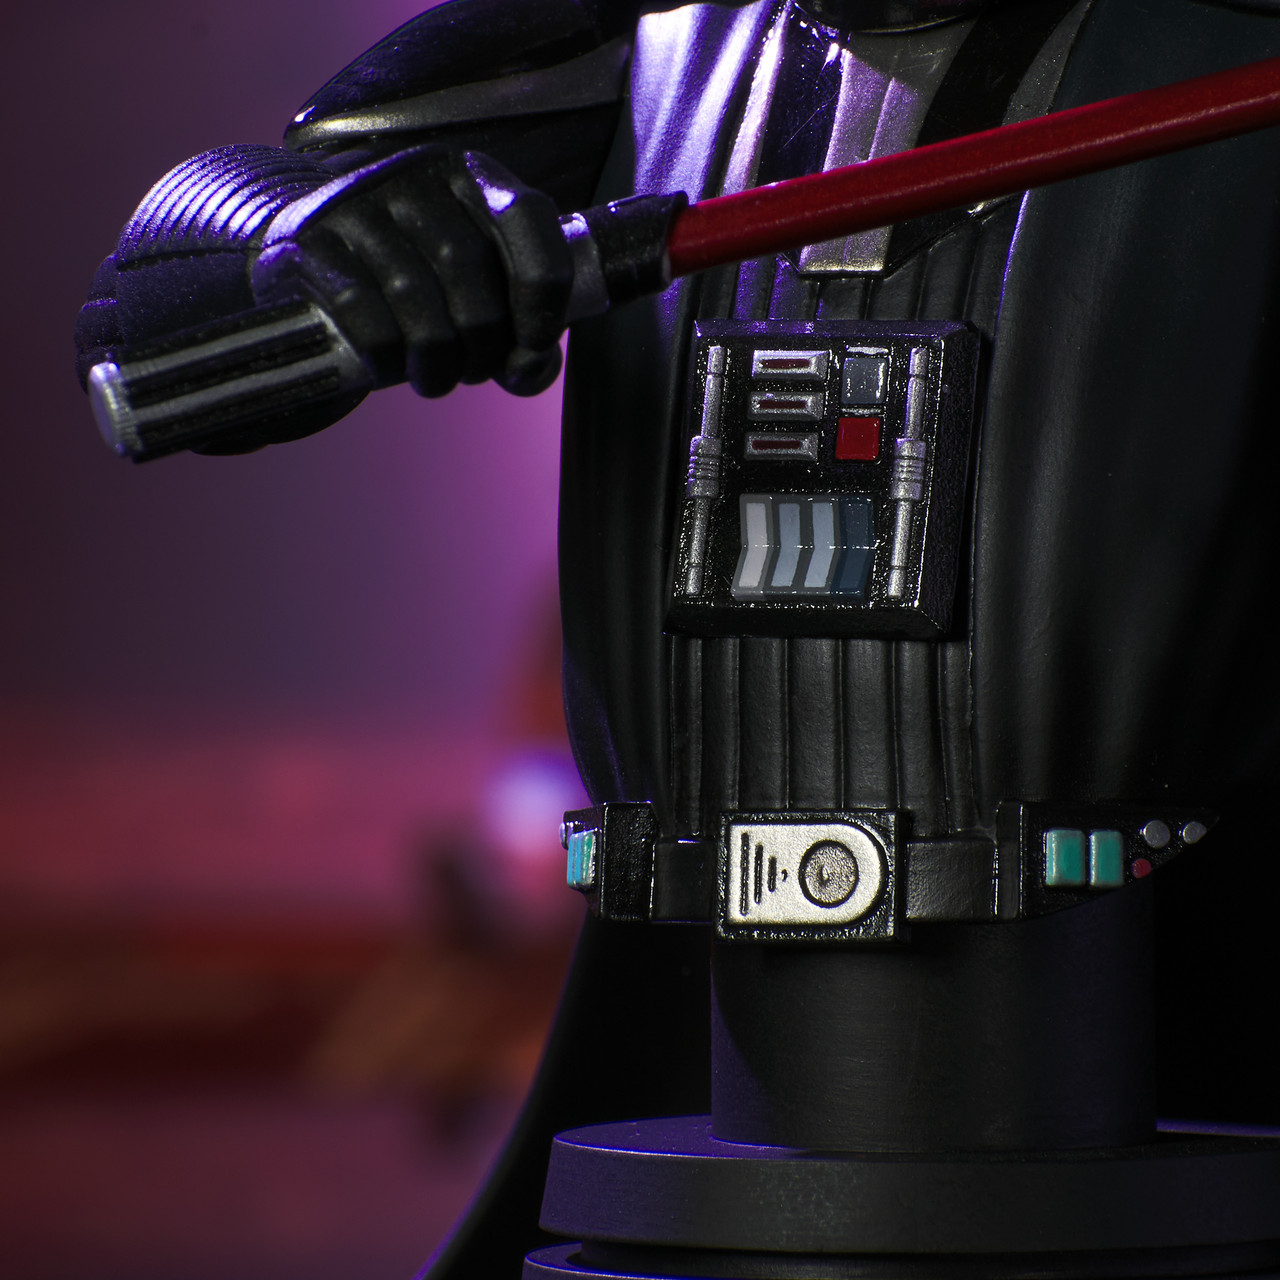 Gentle Giant - Star Wars - Darth Vader Dark Vador buste 1/7 - Rebels  Figurine